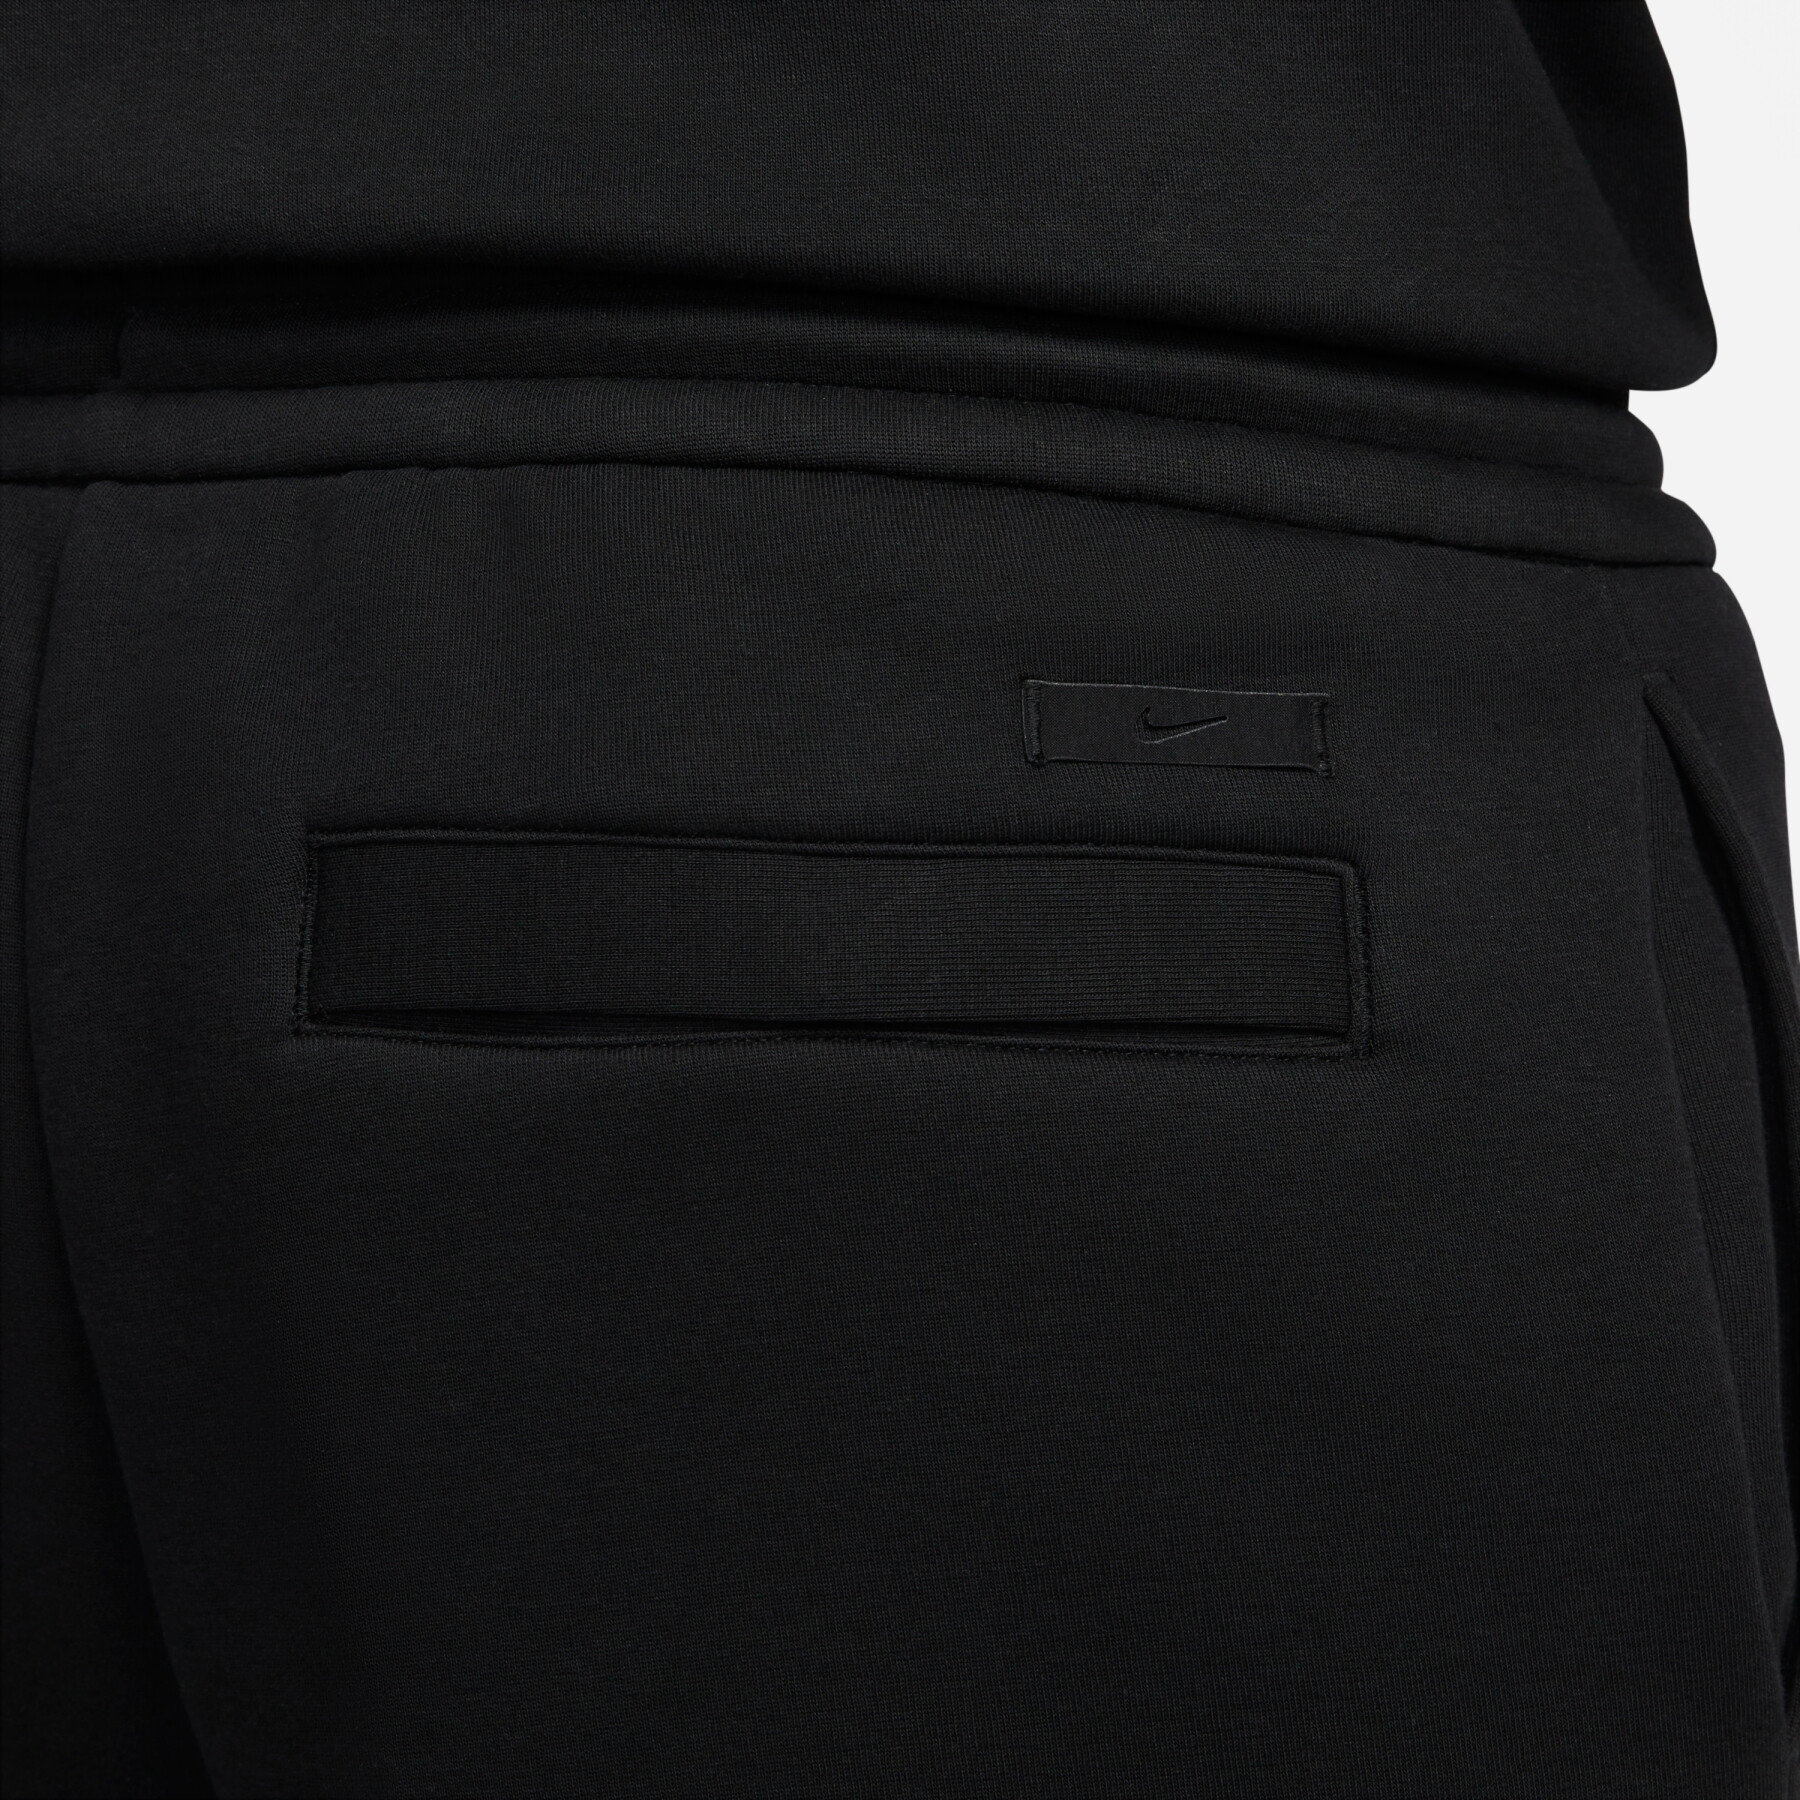 Lockere Jogginghose mit offenem Saum Nike Tech Fleece Reimagined